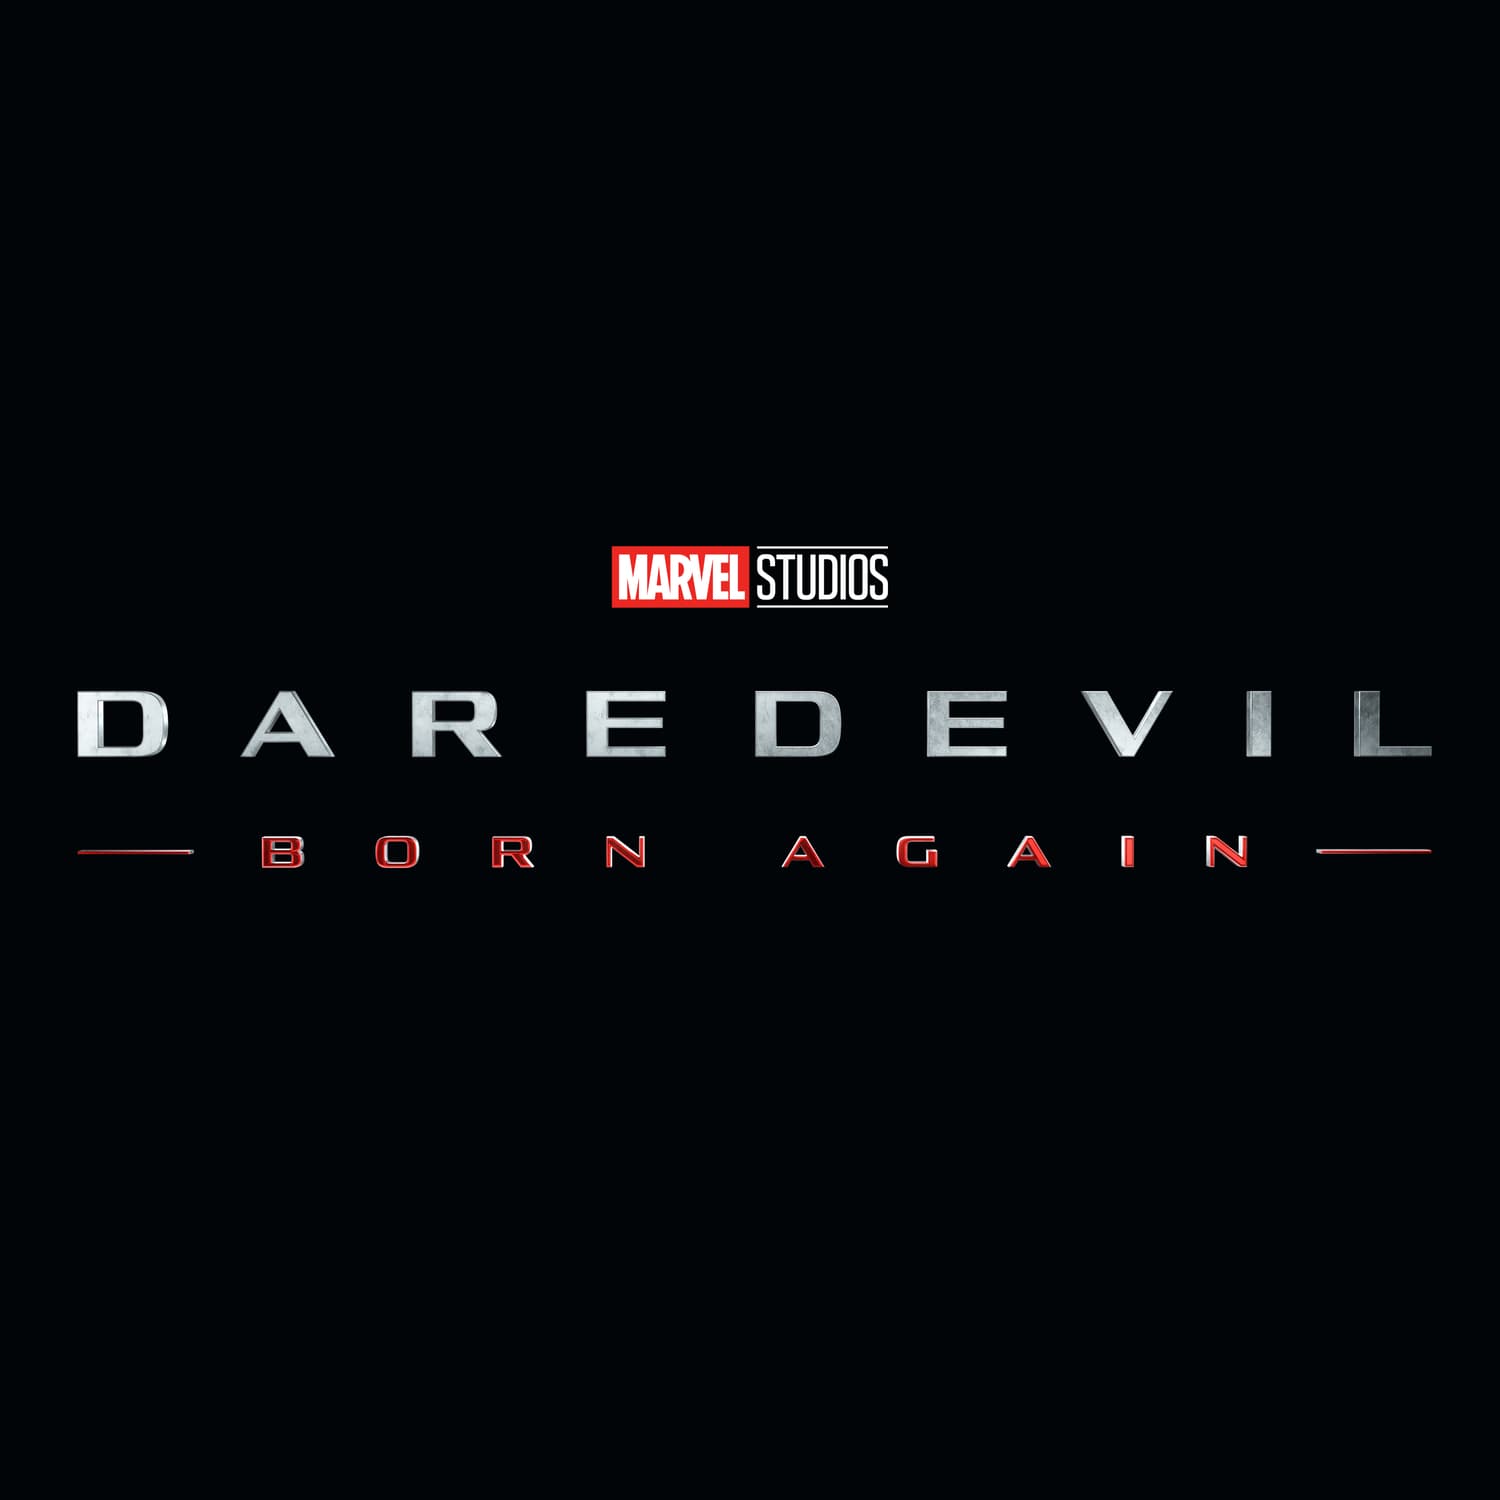 Marvel Studios' Daredevil Born Again